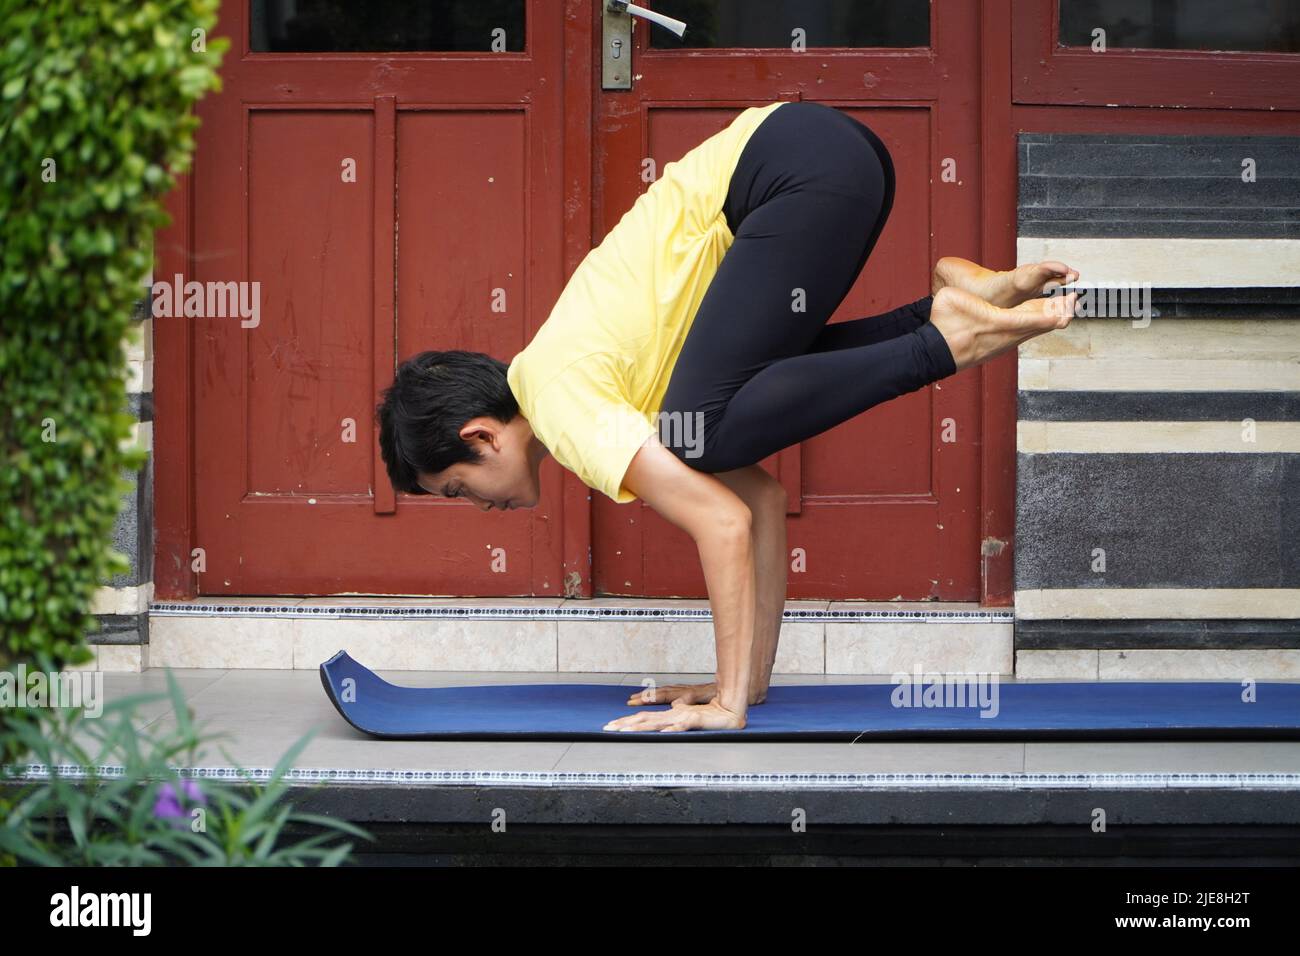 Auf seiner Terrasse übt ein junges asiatisches Mädchen mit einem atemberaubenden Aussehen Yoga, während es einen kurzen Haarschnitt, ein gelbes Hemd und schwarze Leggings trägt. S Stockfoto